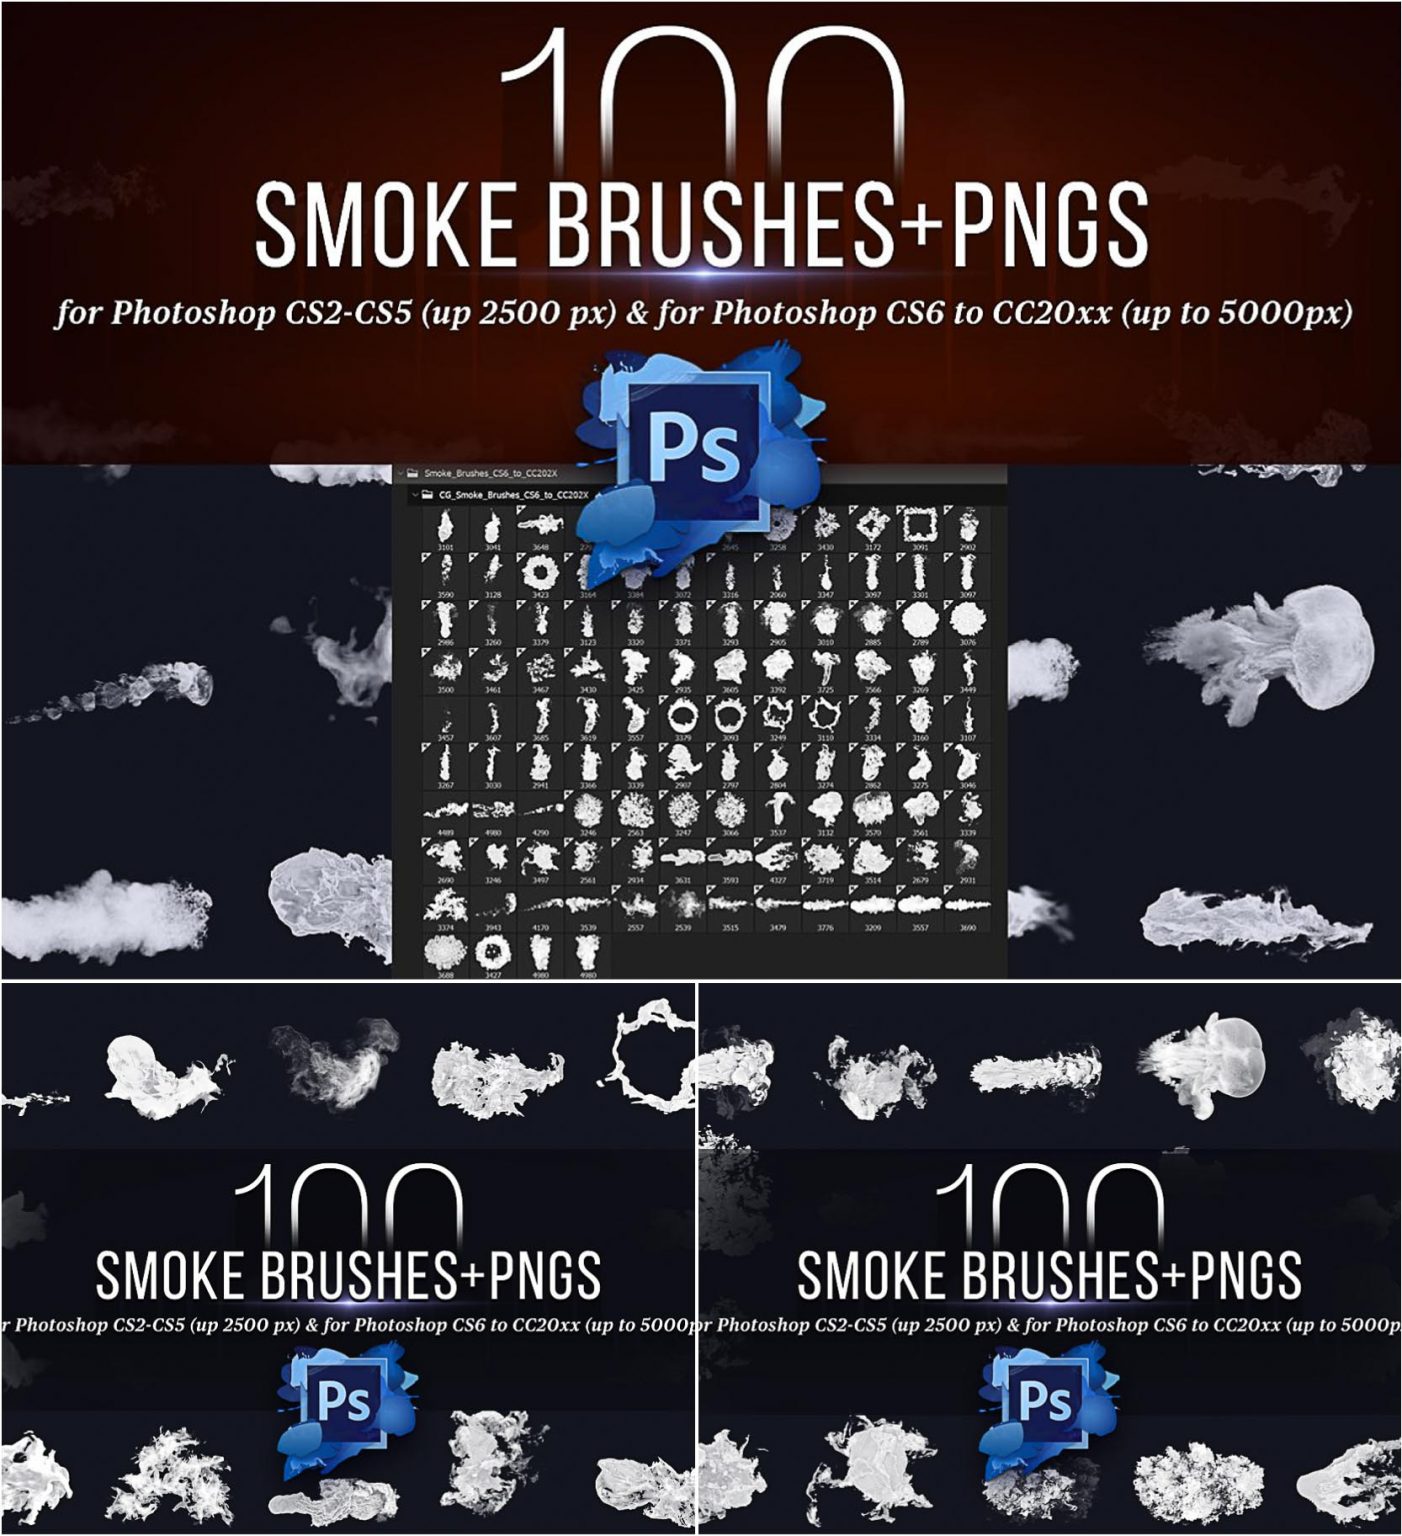 adobe photoshop smoke brushes free download